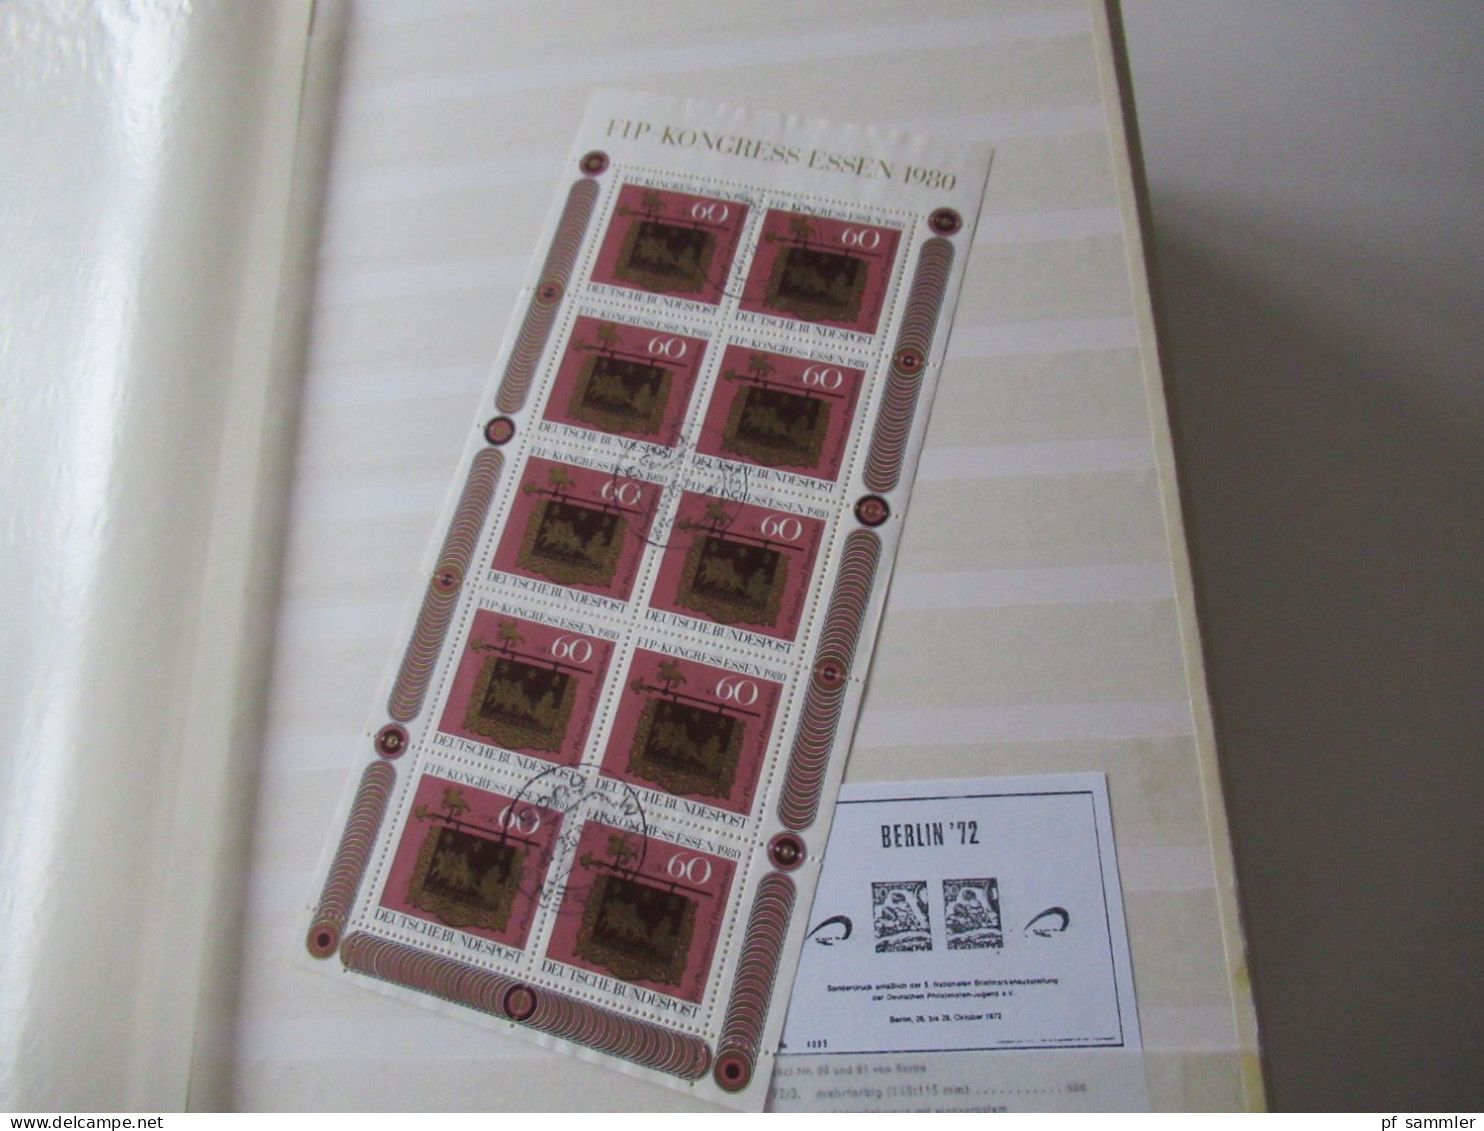 Sammlung / Interessantes Album / Lagerbuch BRD 1957 - 1983 Tausende Gestempelte Marken  / Absolute Fundgrube! - Sammlungen (im Alben)